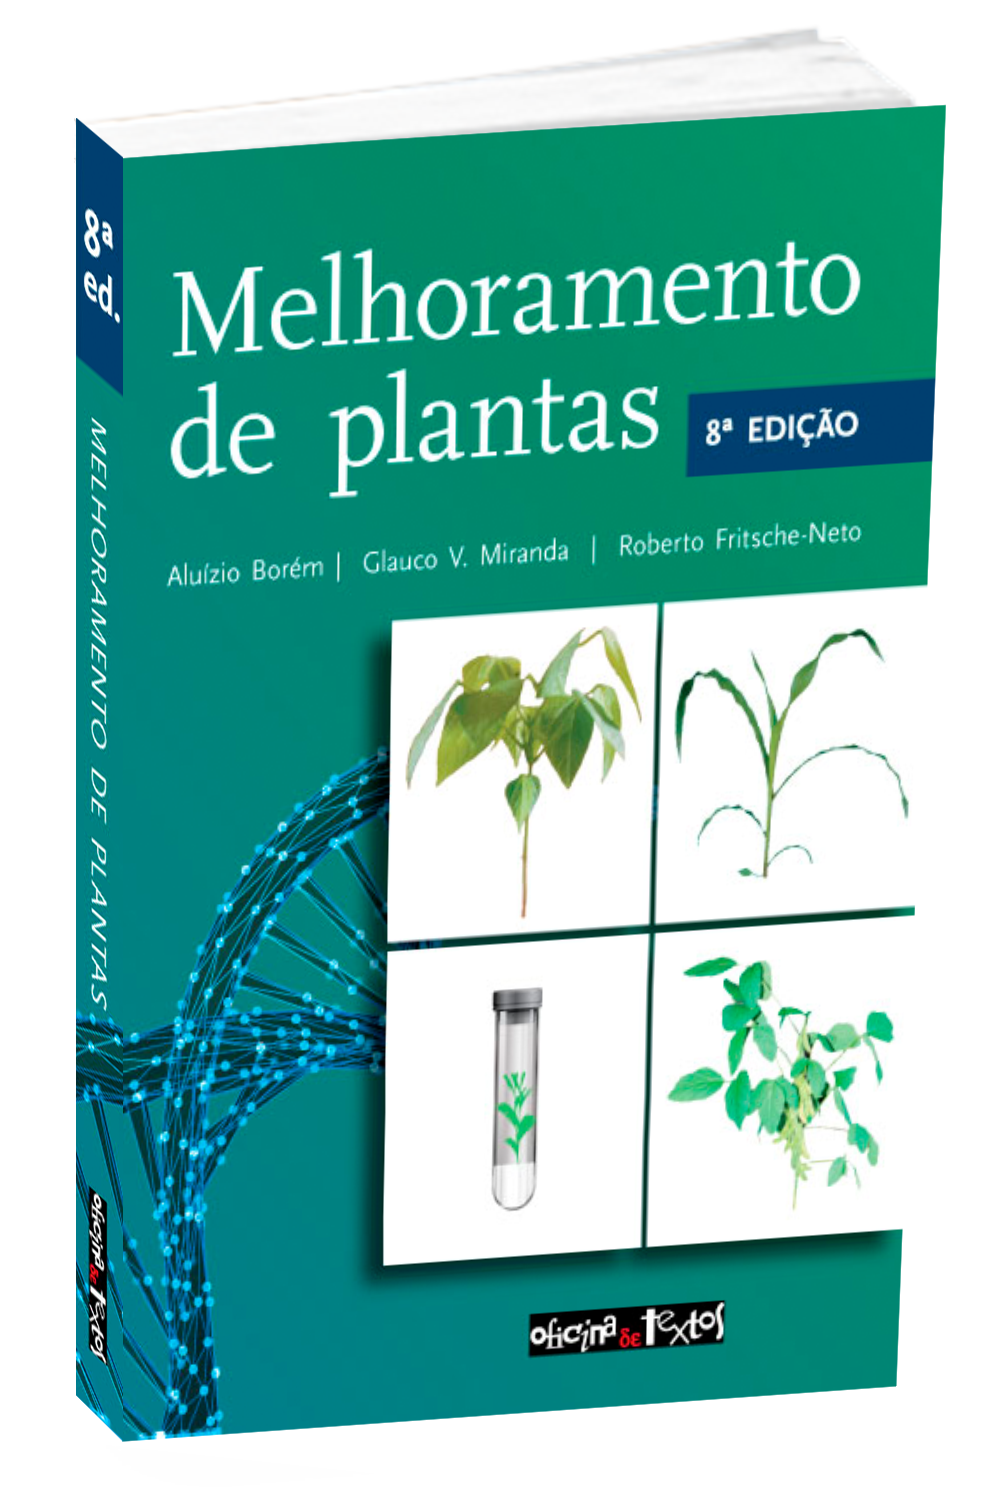 Capa de "Melhoramento de plantas 8ª ed.", publicado pela Editora Oficina de Textos